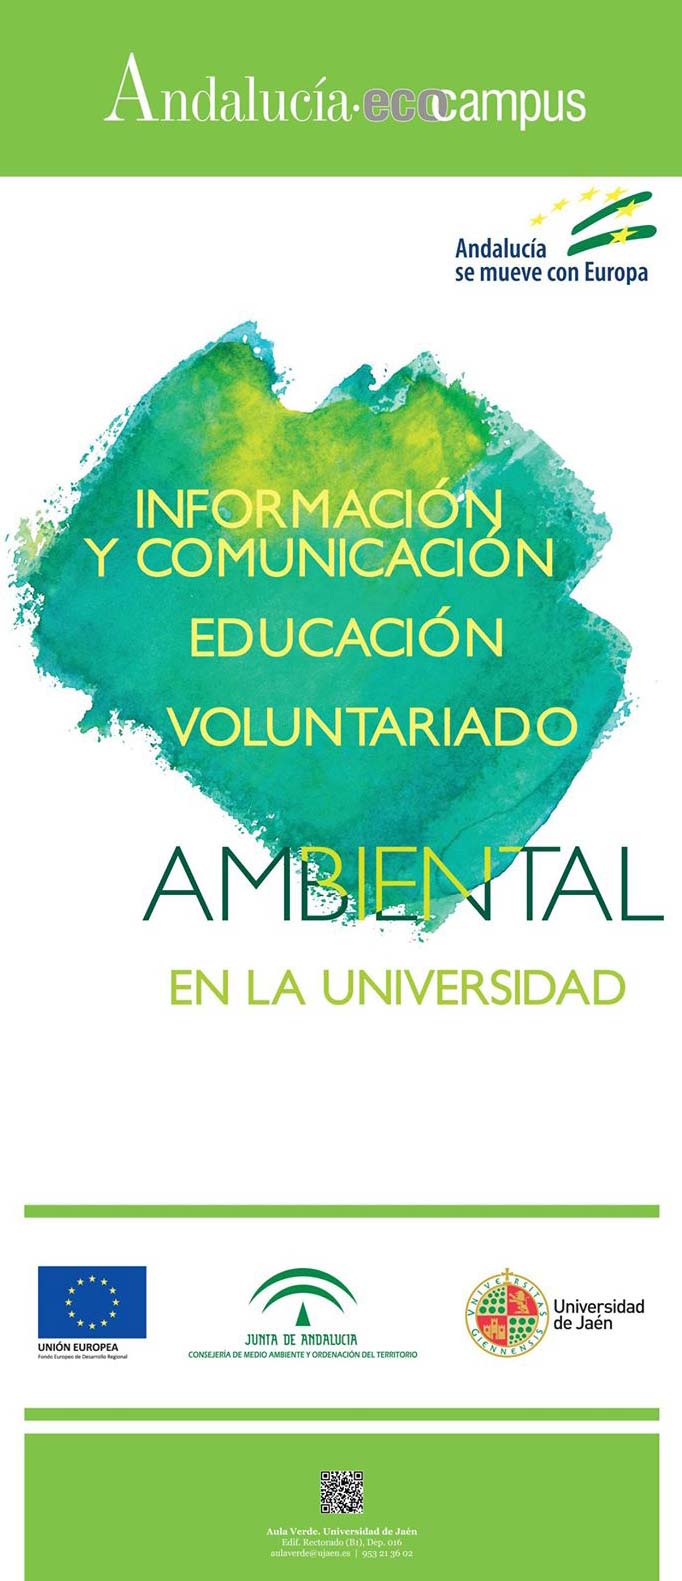 Andalucía Eco-Campus